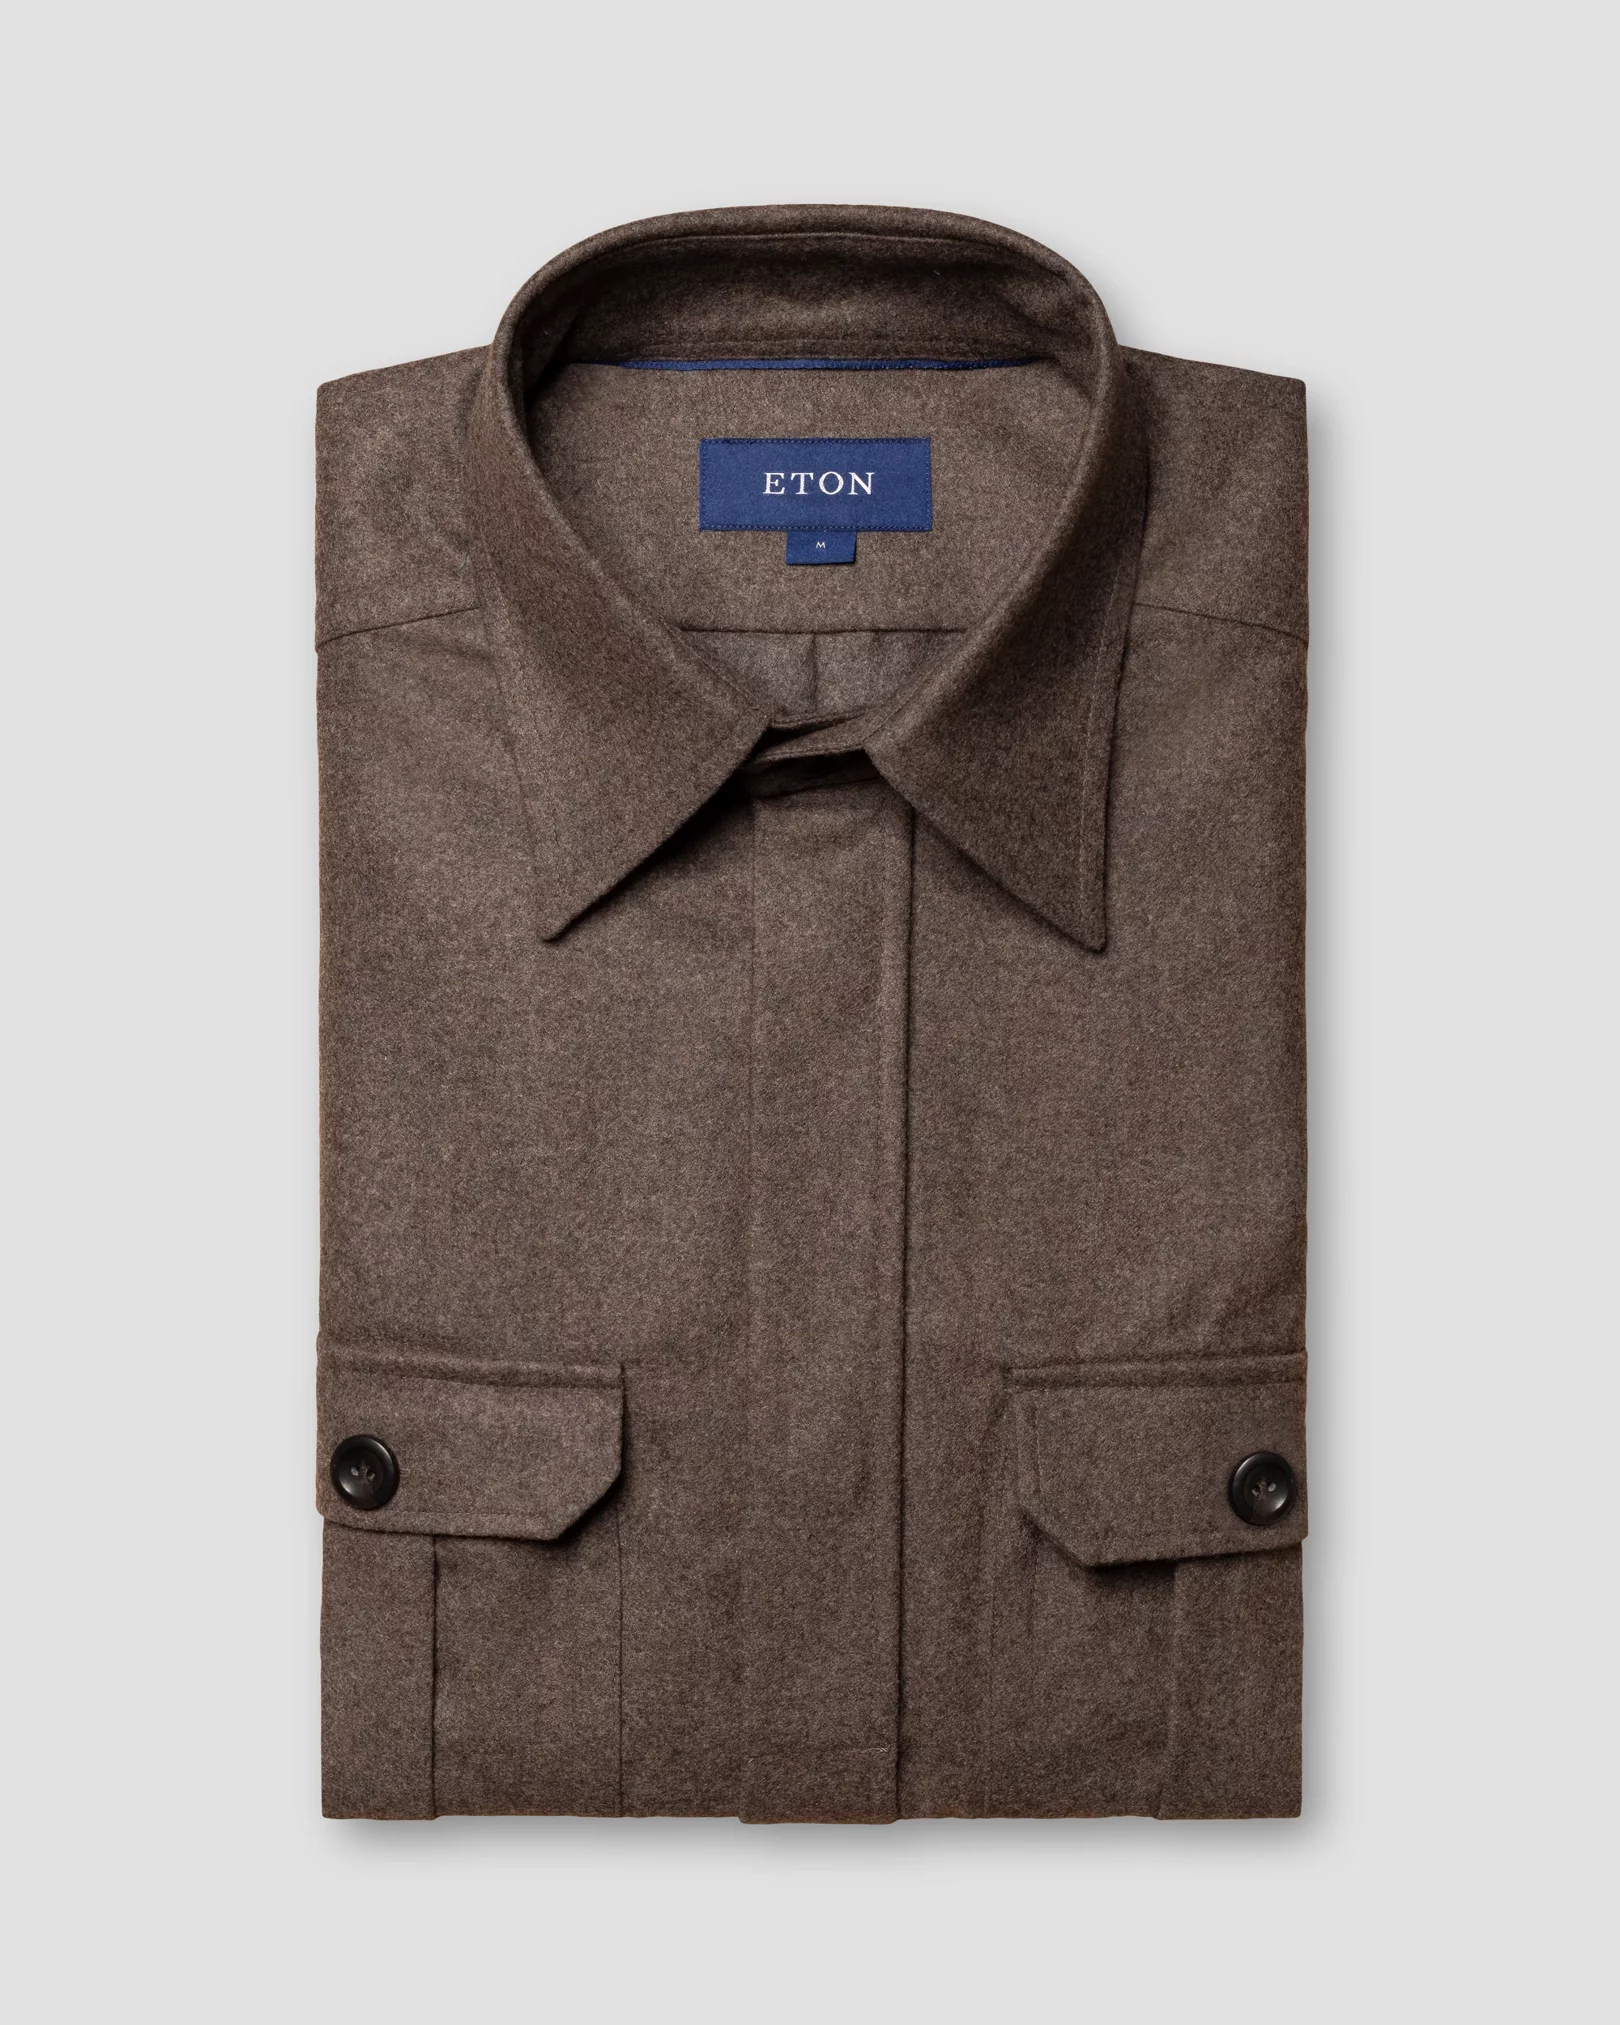 Eton - brown twill wool cashmere